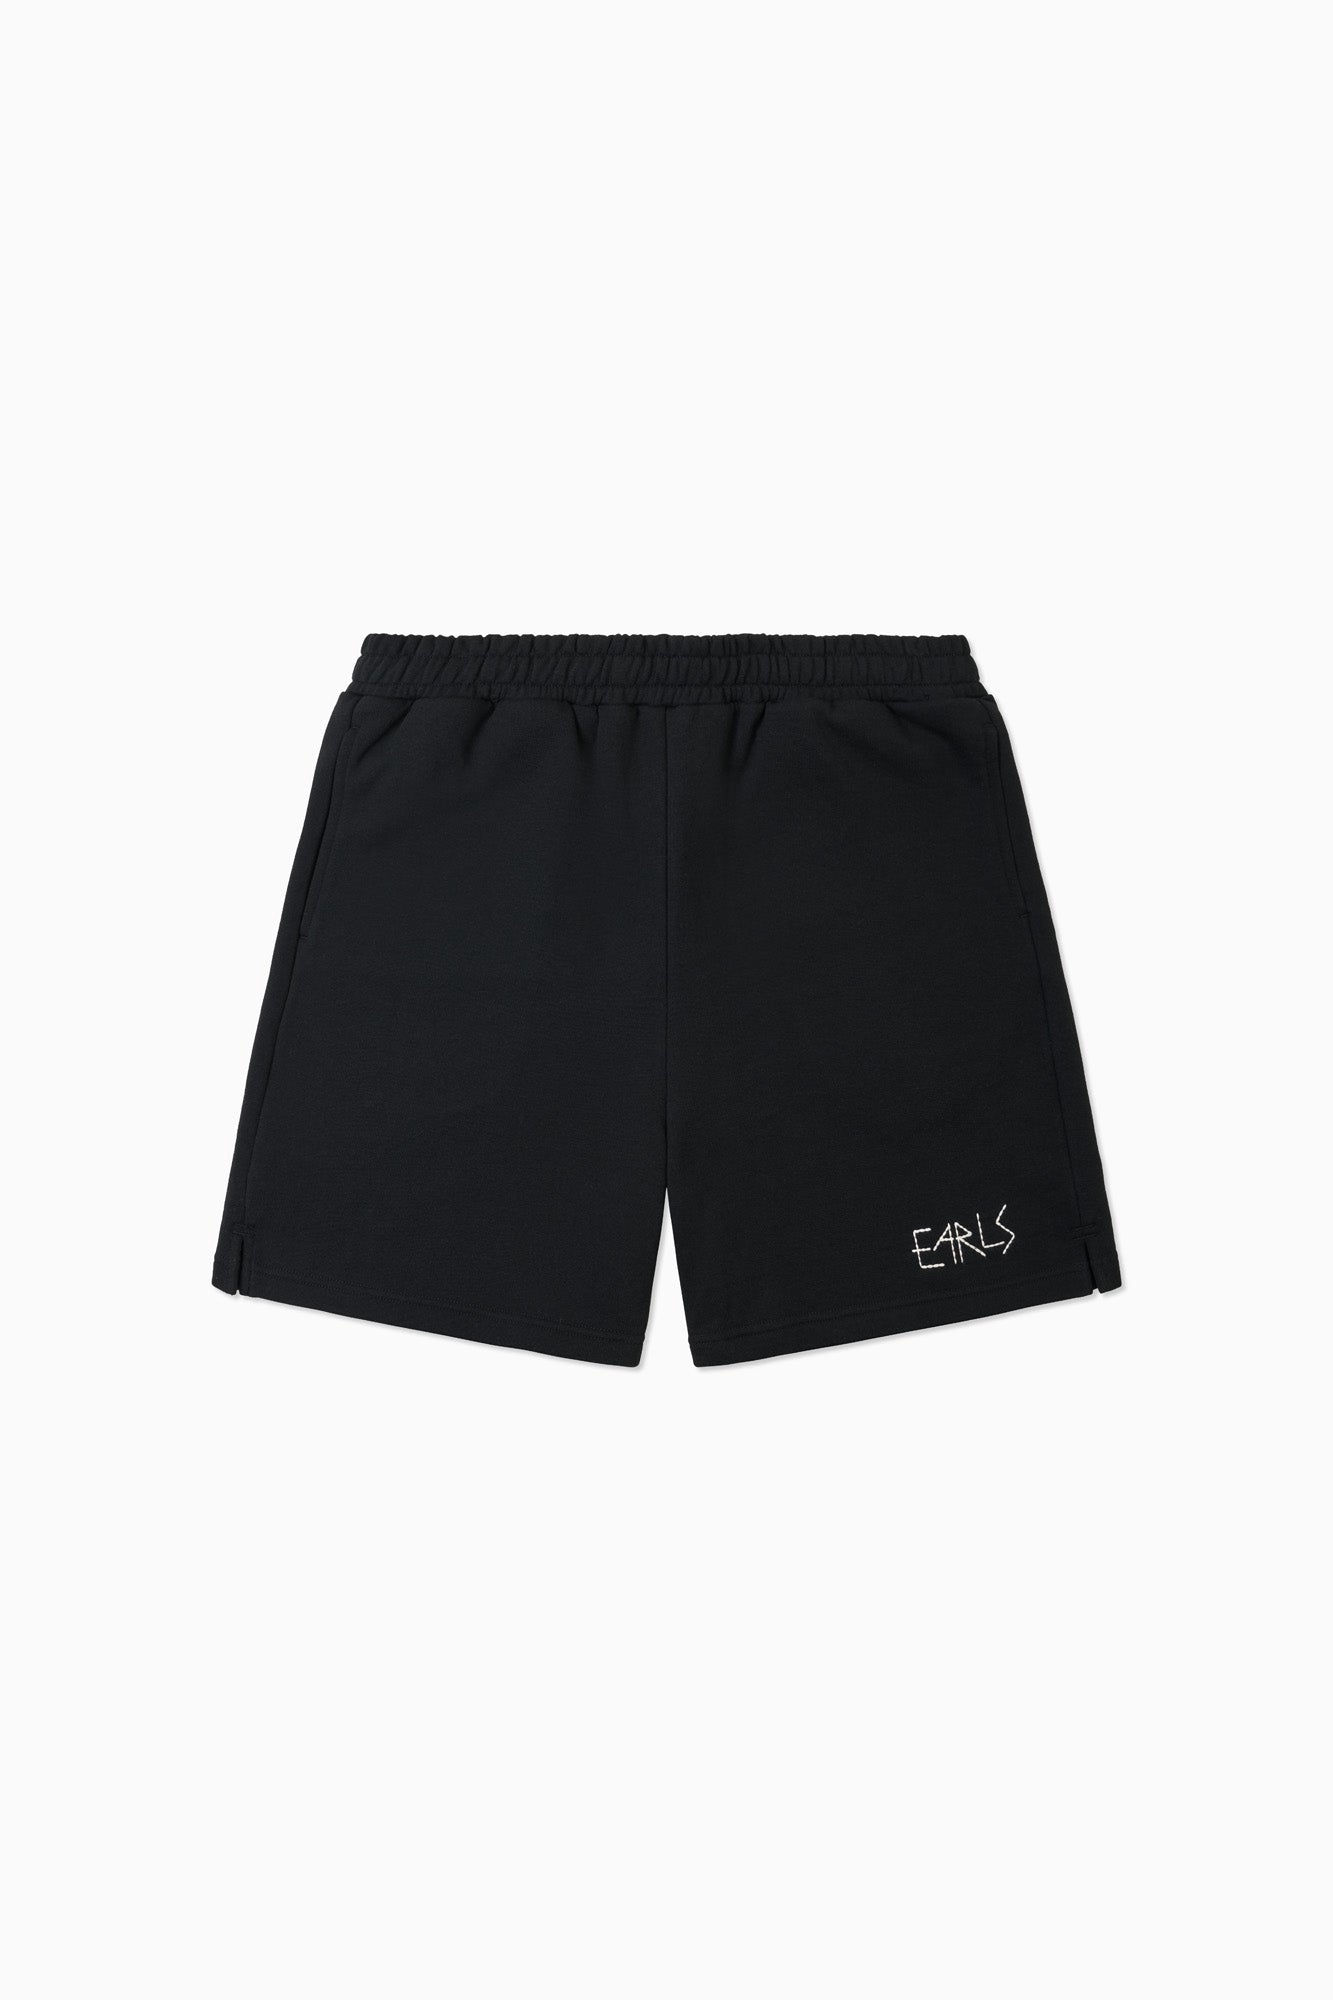 Earls Basics Fleece Short - Black